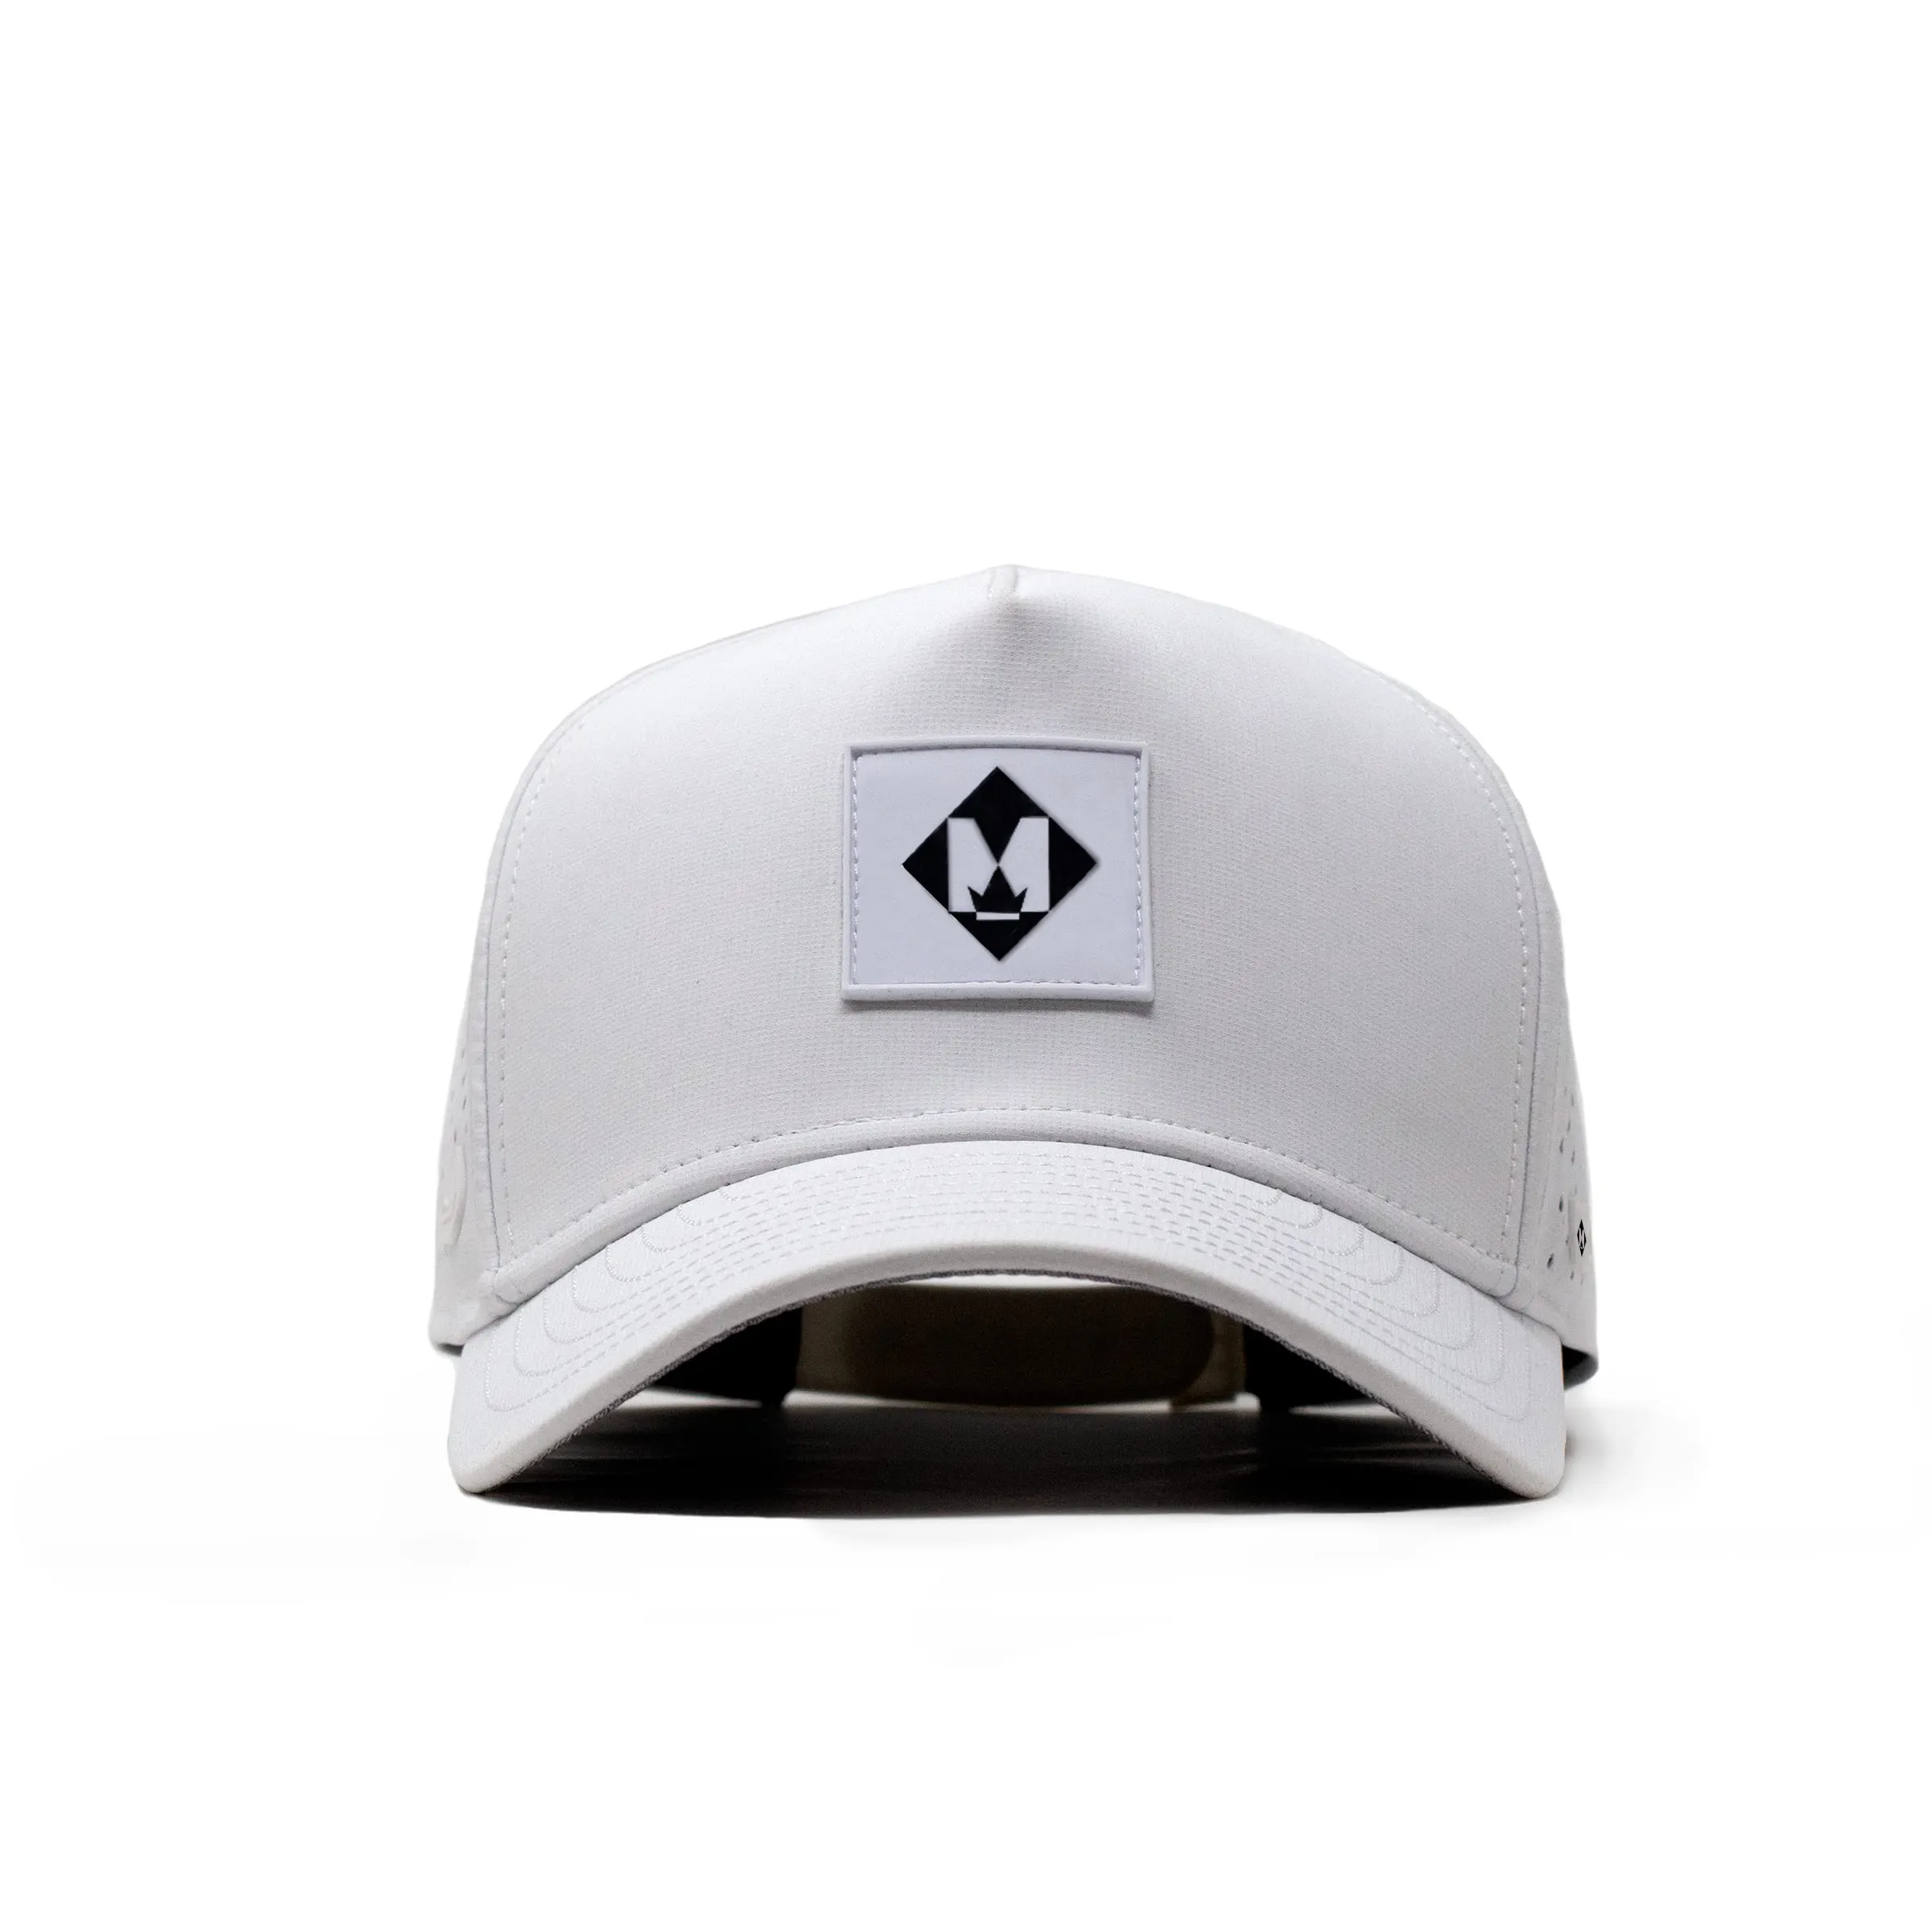 תיקון מותאם אישית לוגו 5 פנל מצויד לייזר חור מחורר עמיד למים כובע, לנשימה מהיר יבש גולף Caps